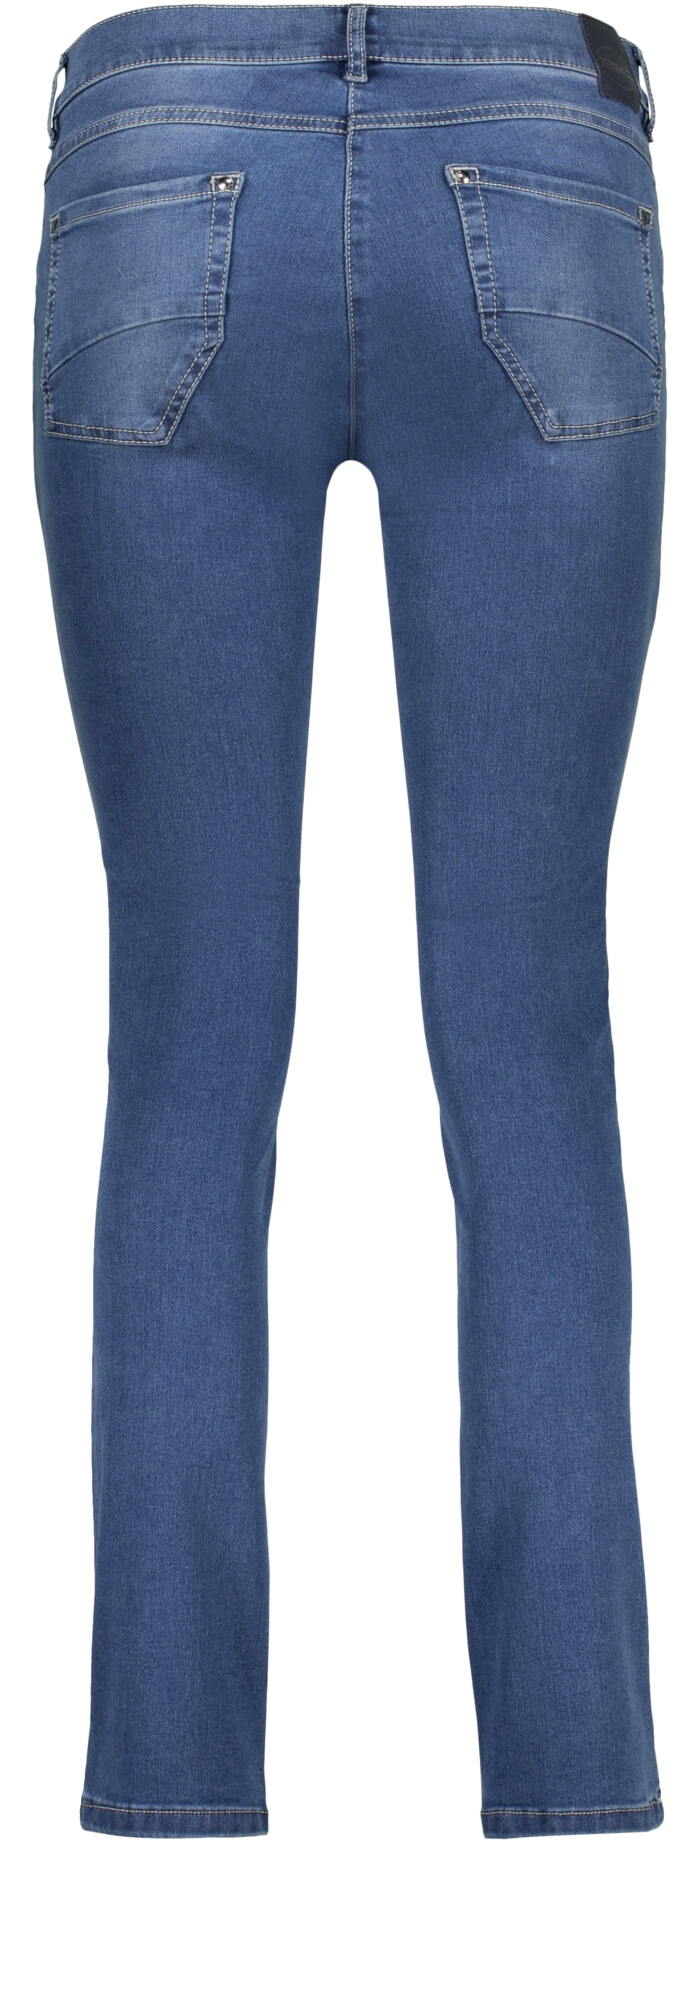 Skinny jeans model Twiggy